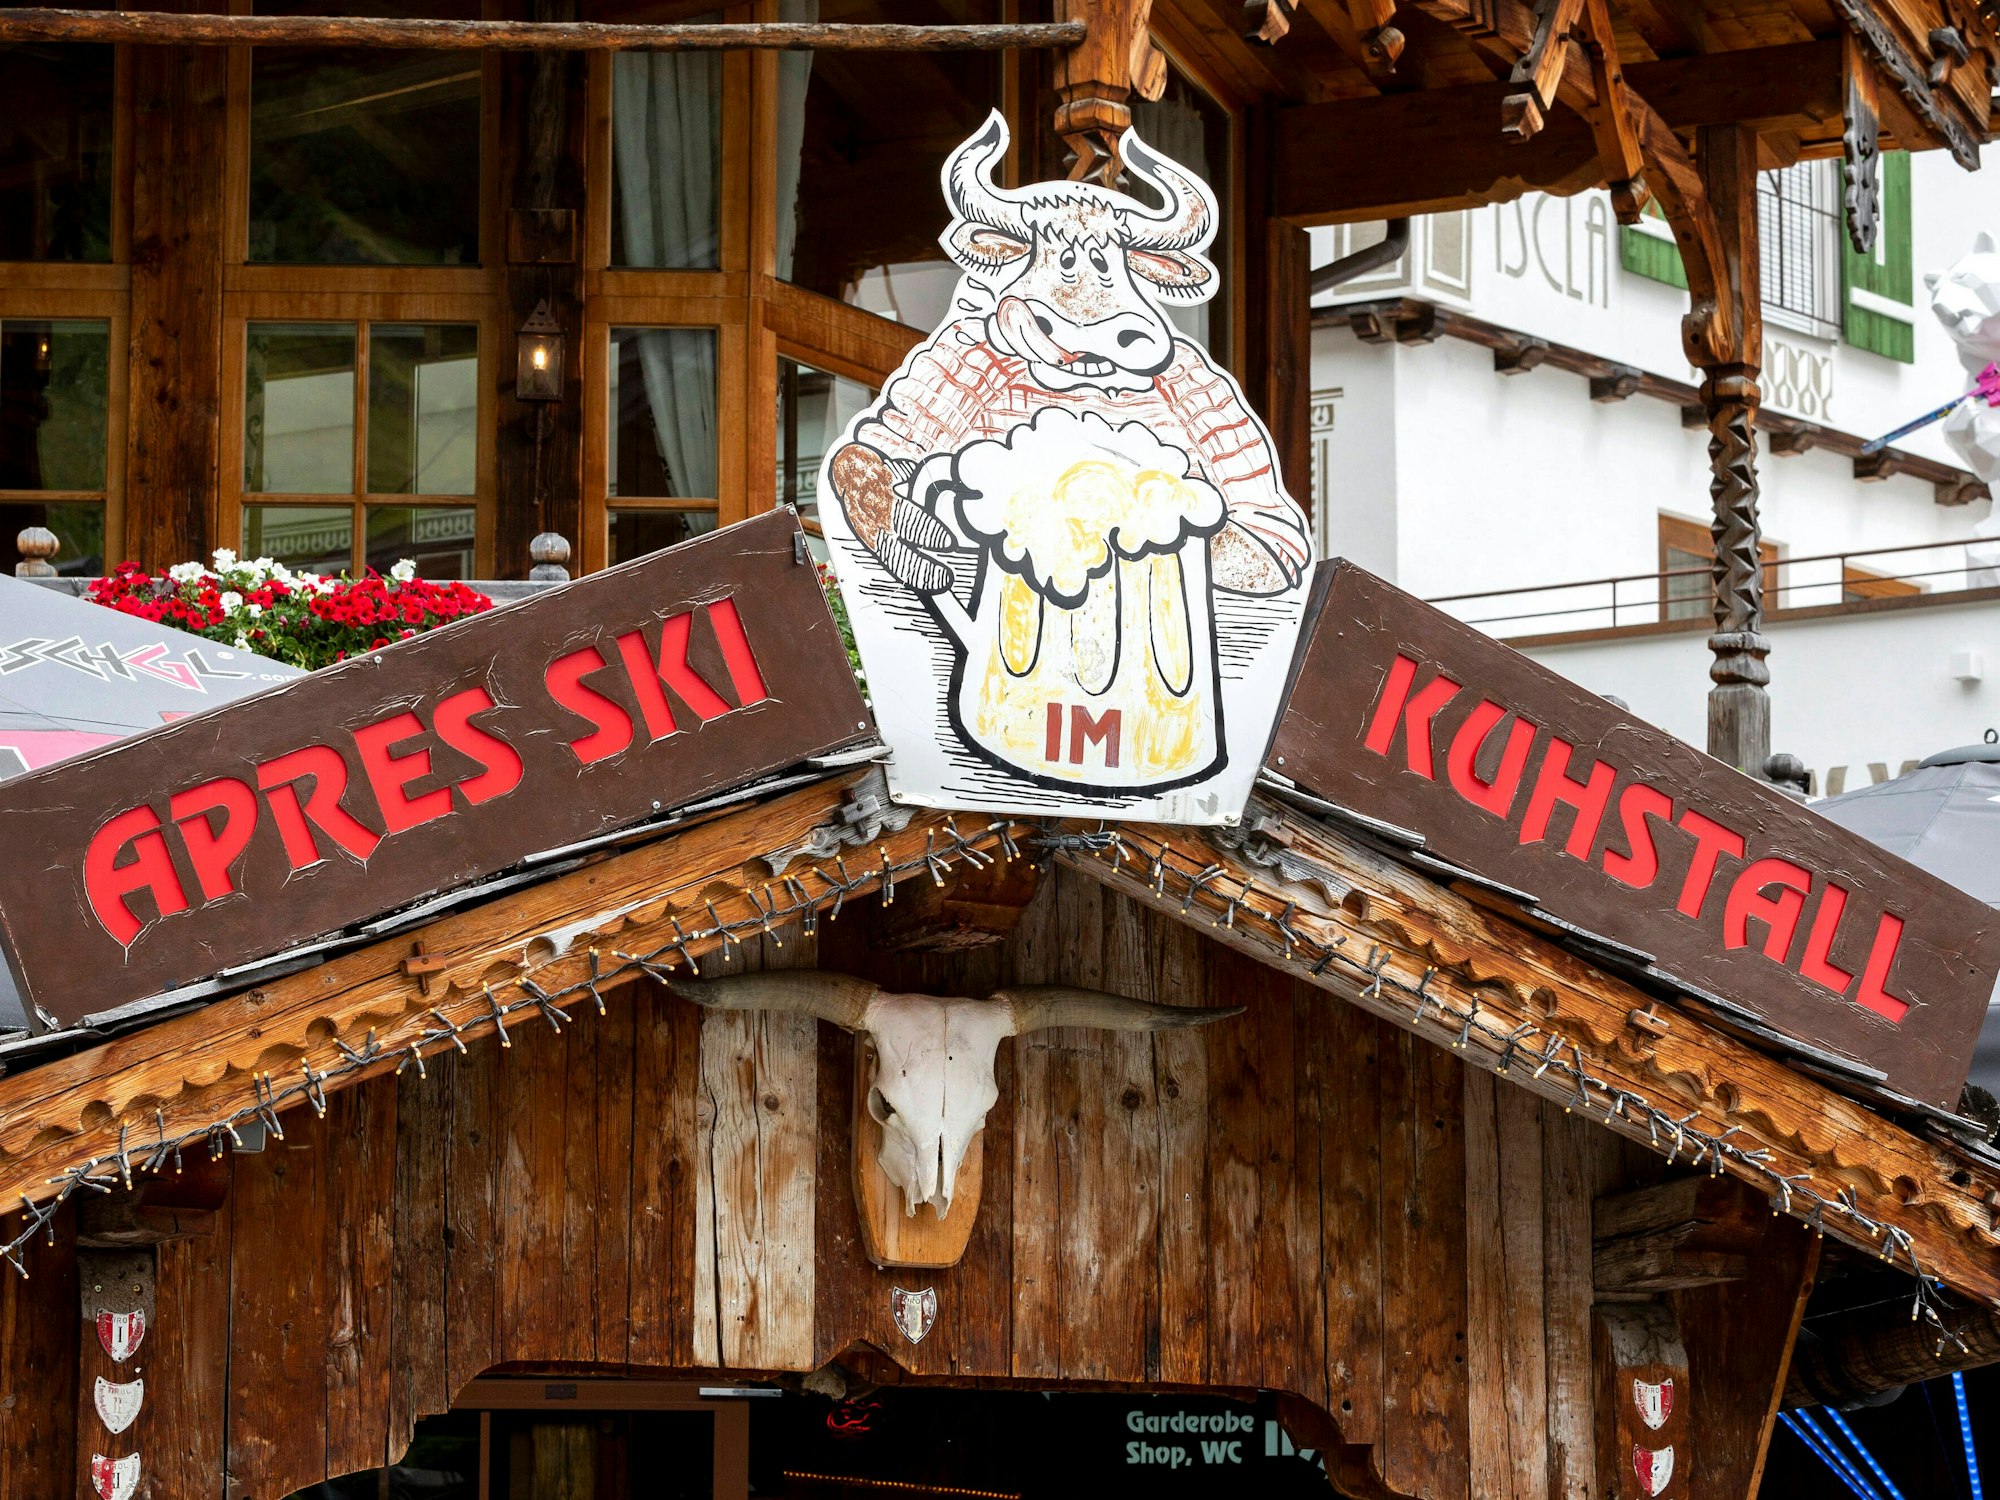 Après-Ski Kuhstall in Ischgl.